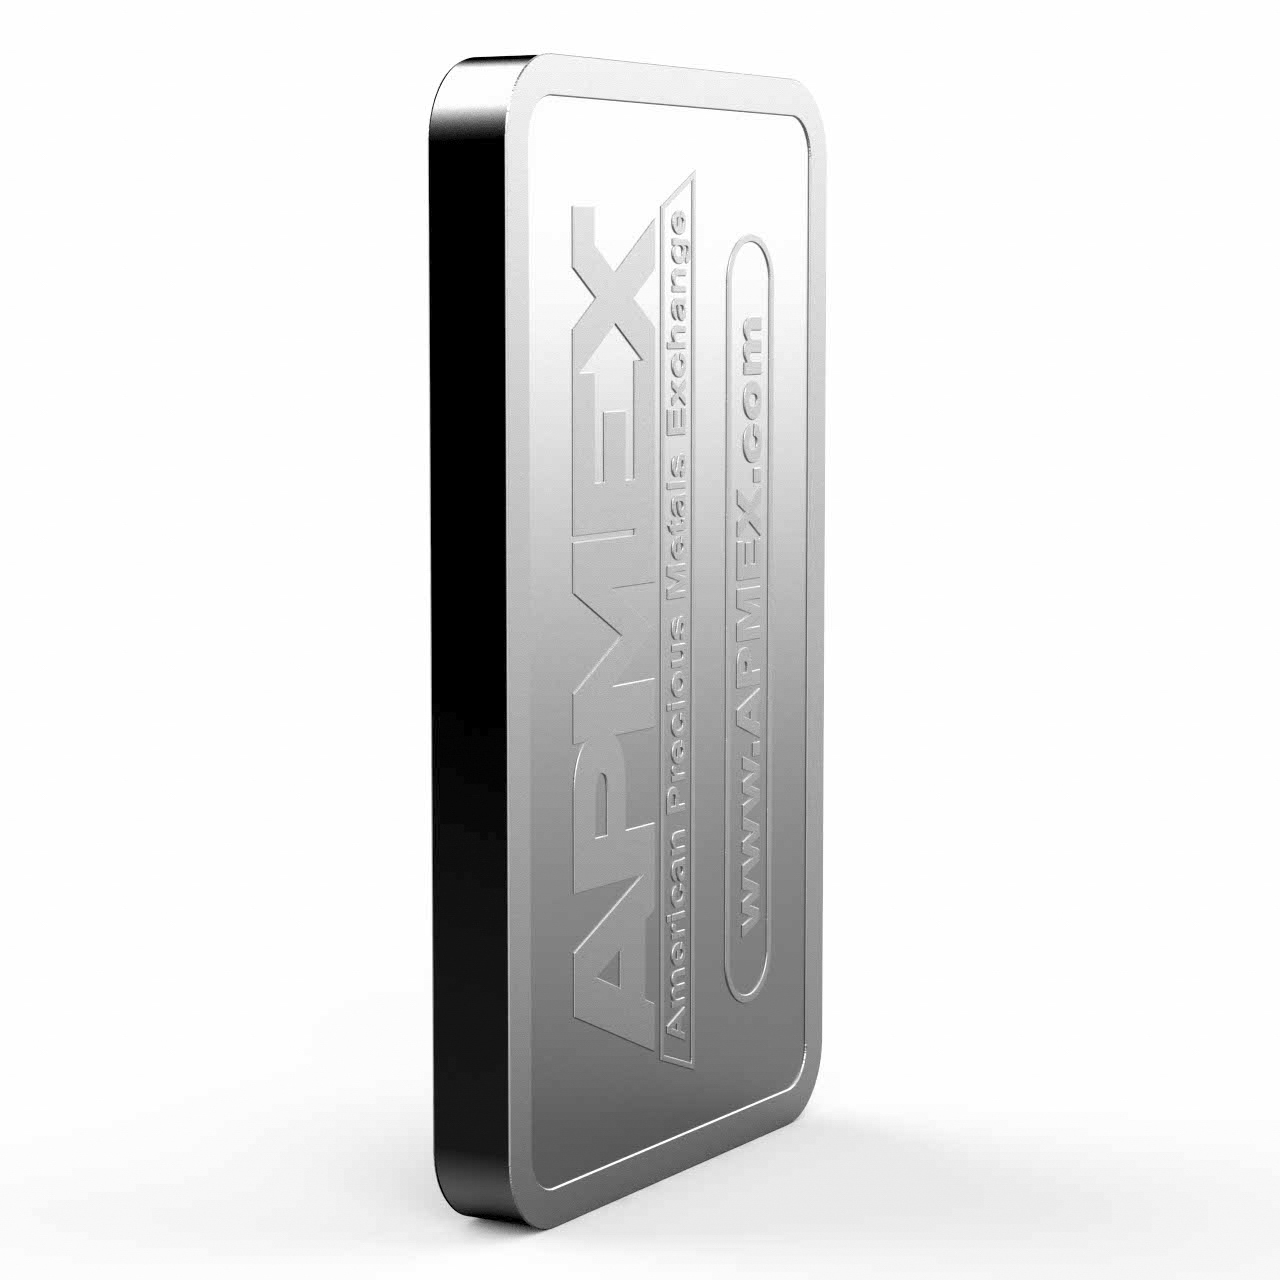 10 oz Silver Bar - APMEX - Walmart